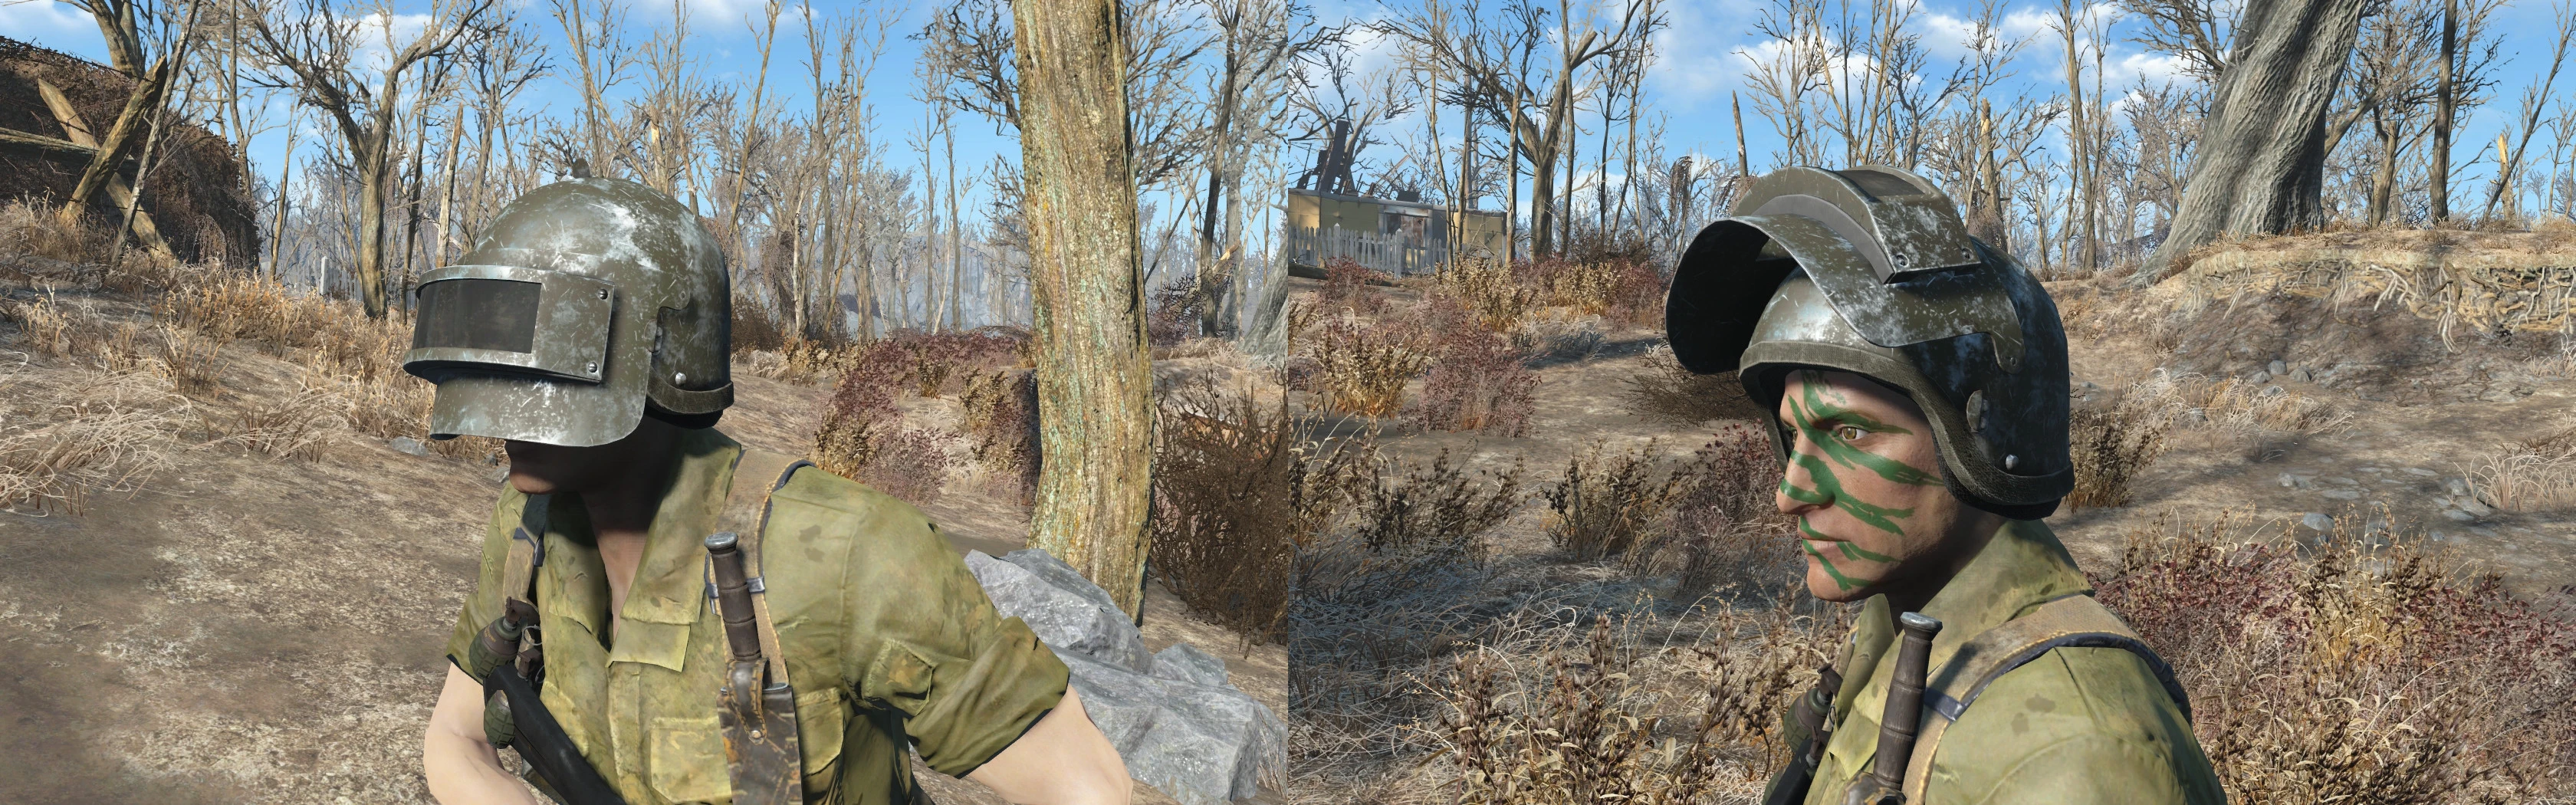 Fallout 4 altyn assault helmet